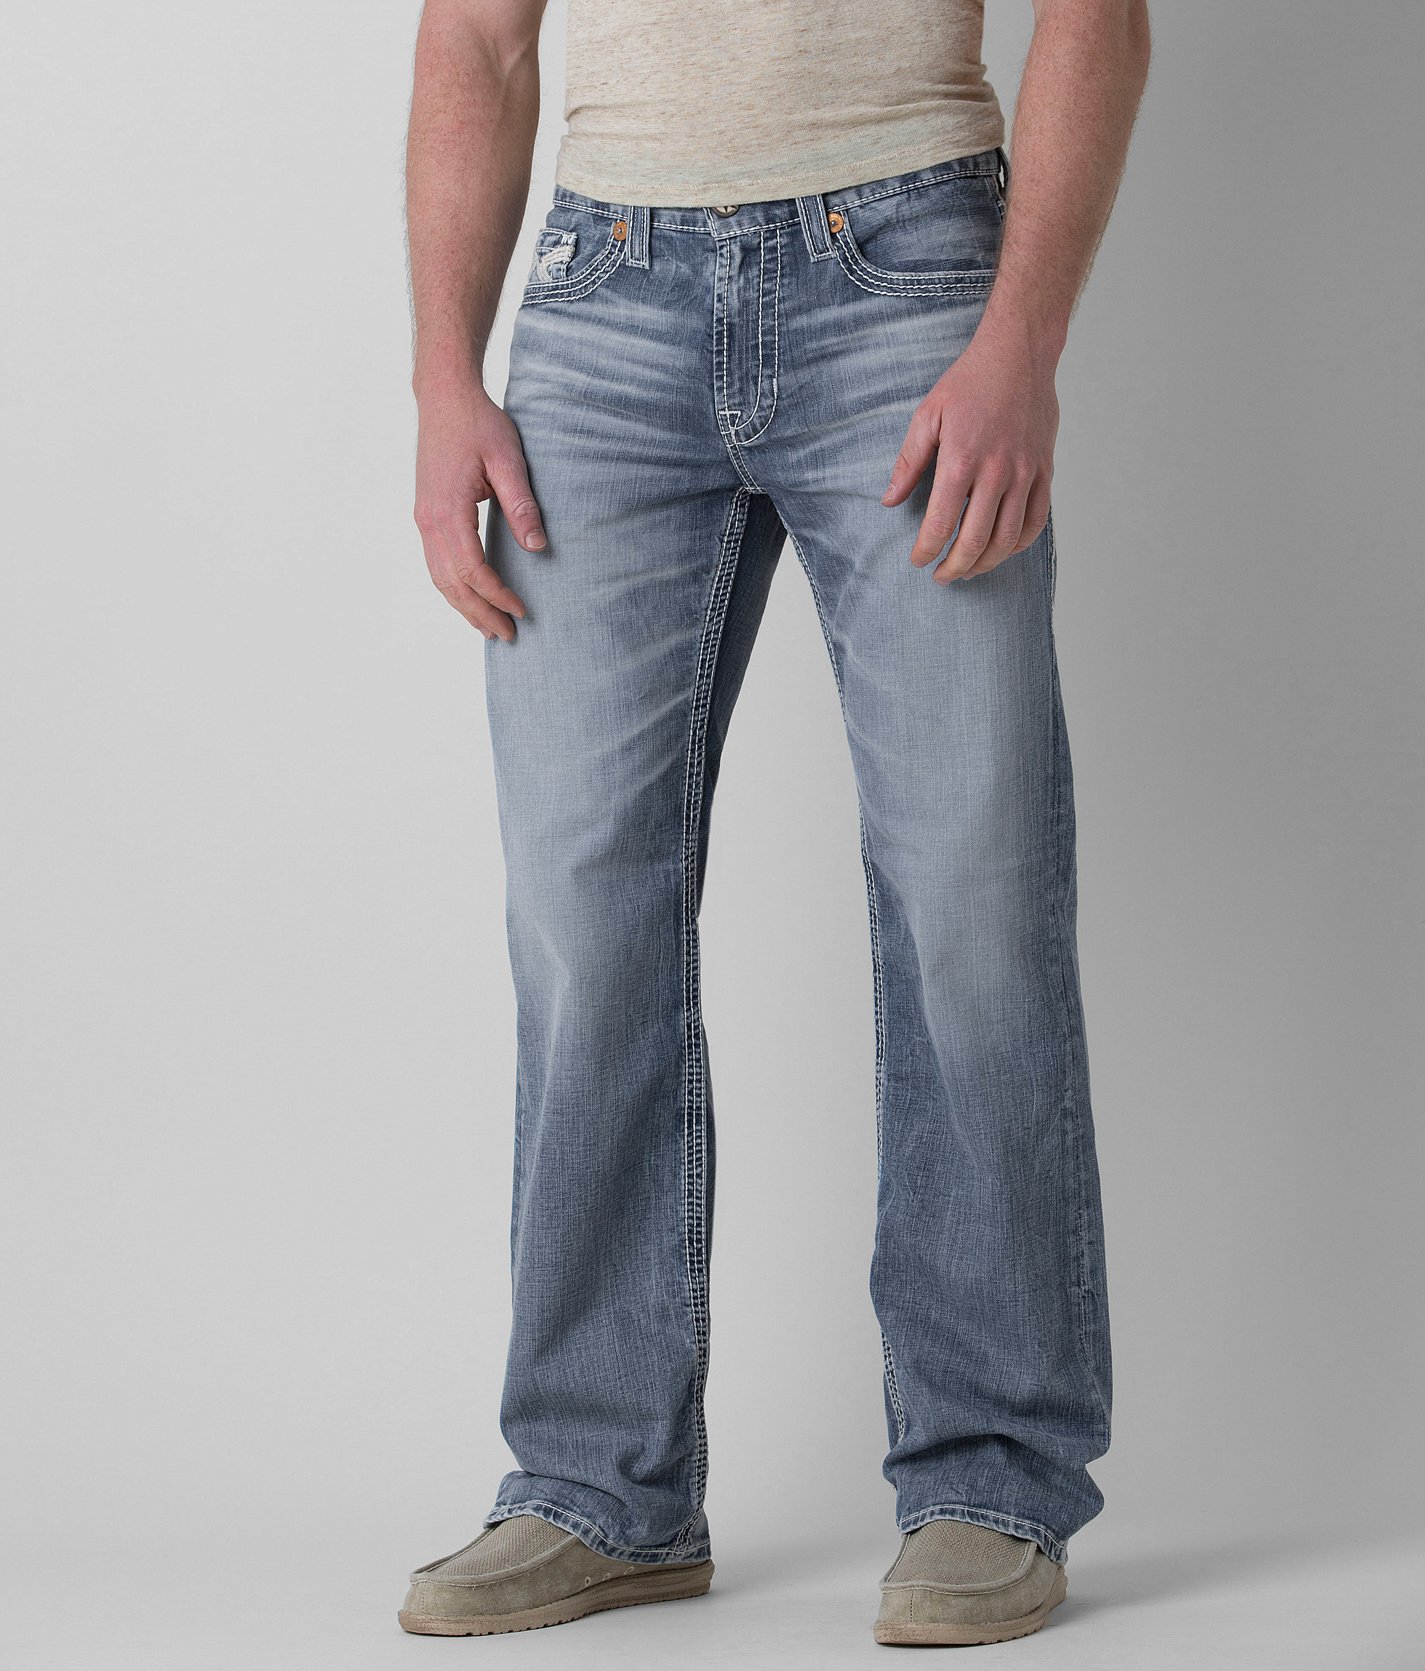 big star pioneer men's jeans